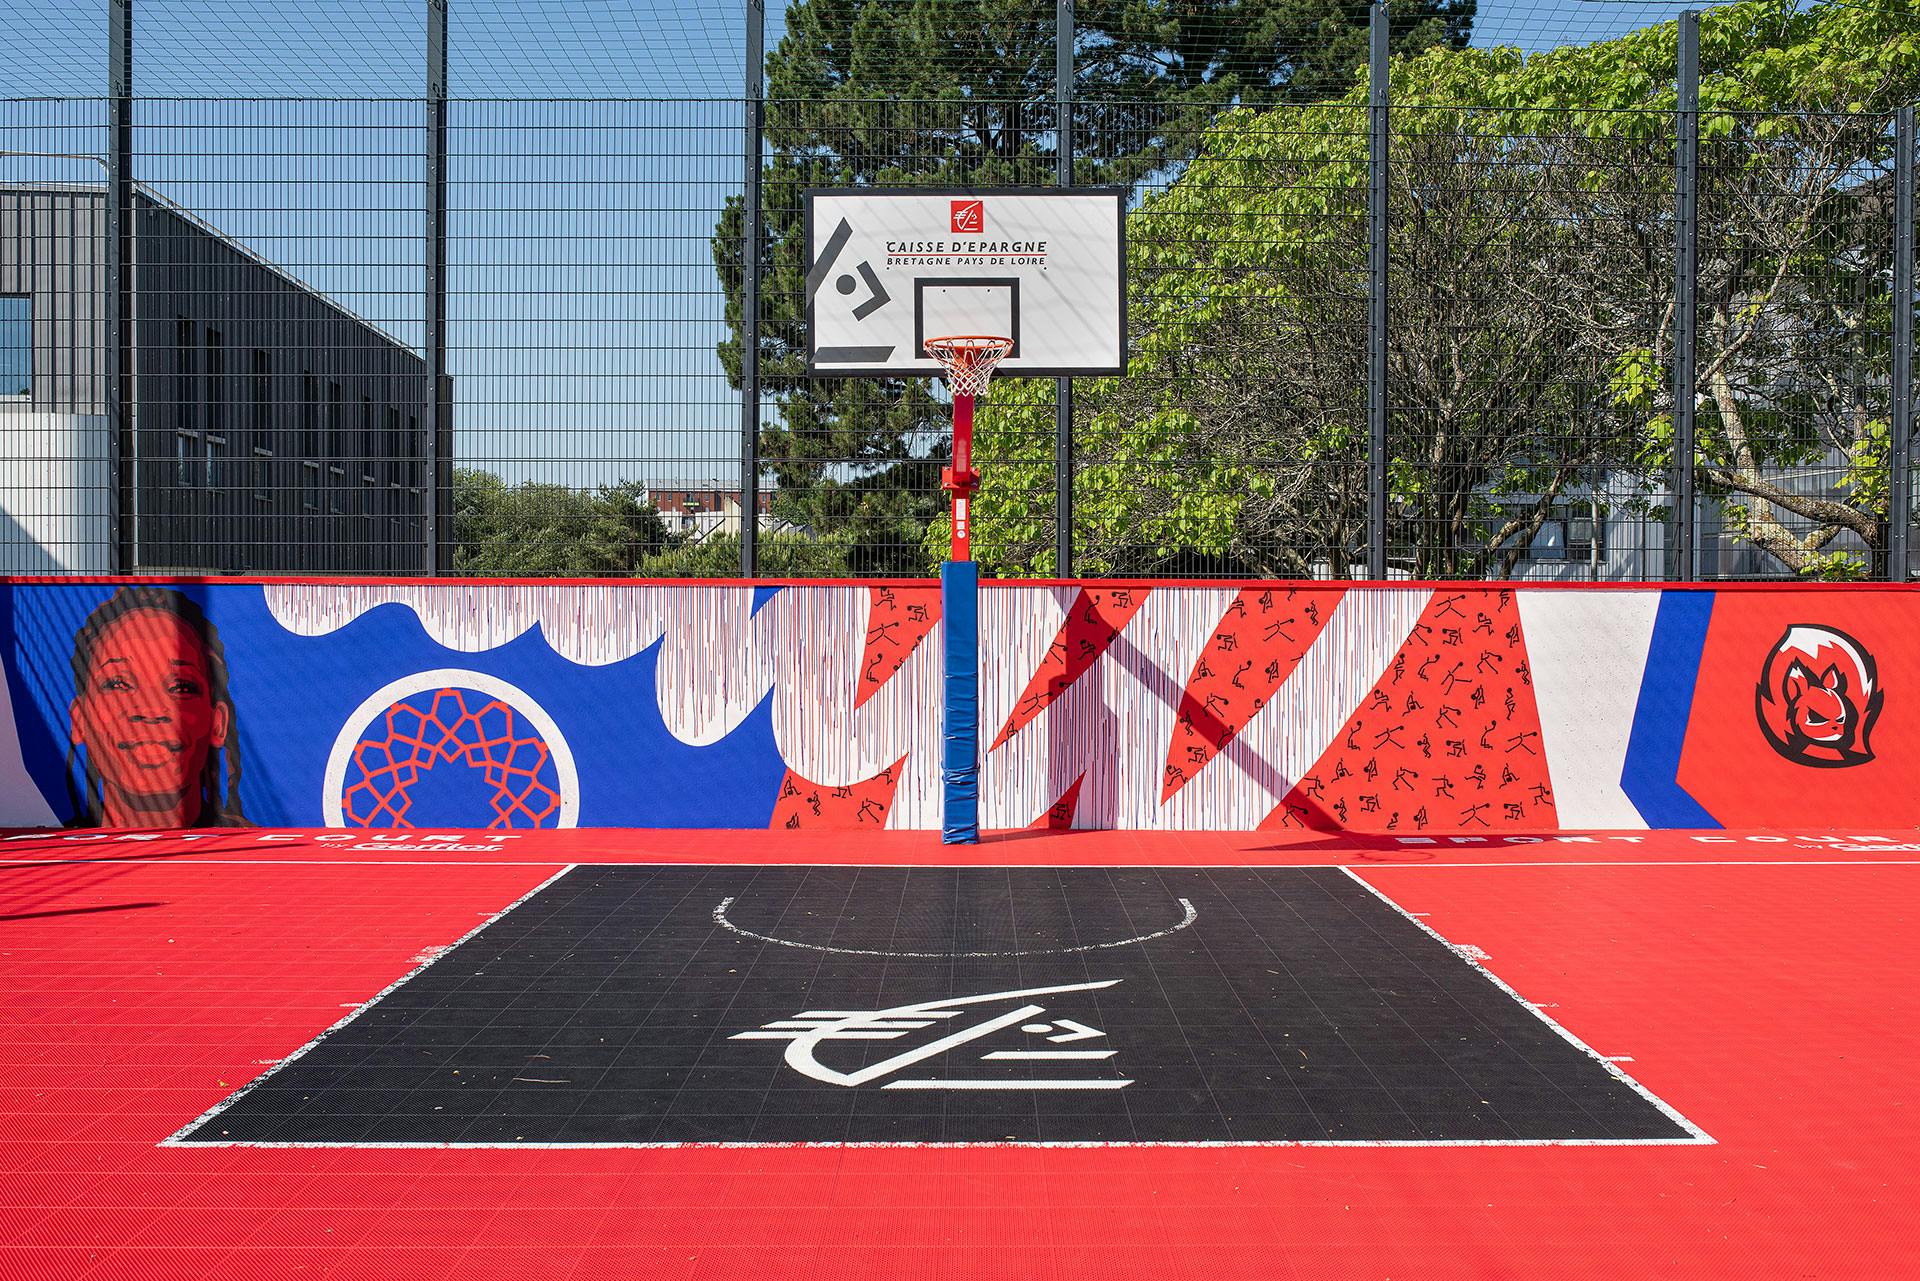 Un terrain de basketball commandité par la Caisse d'Épargne, transformé grâce au Street Art par le Studio Katra. - © Olivier Baco